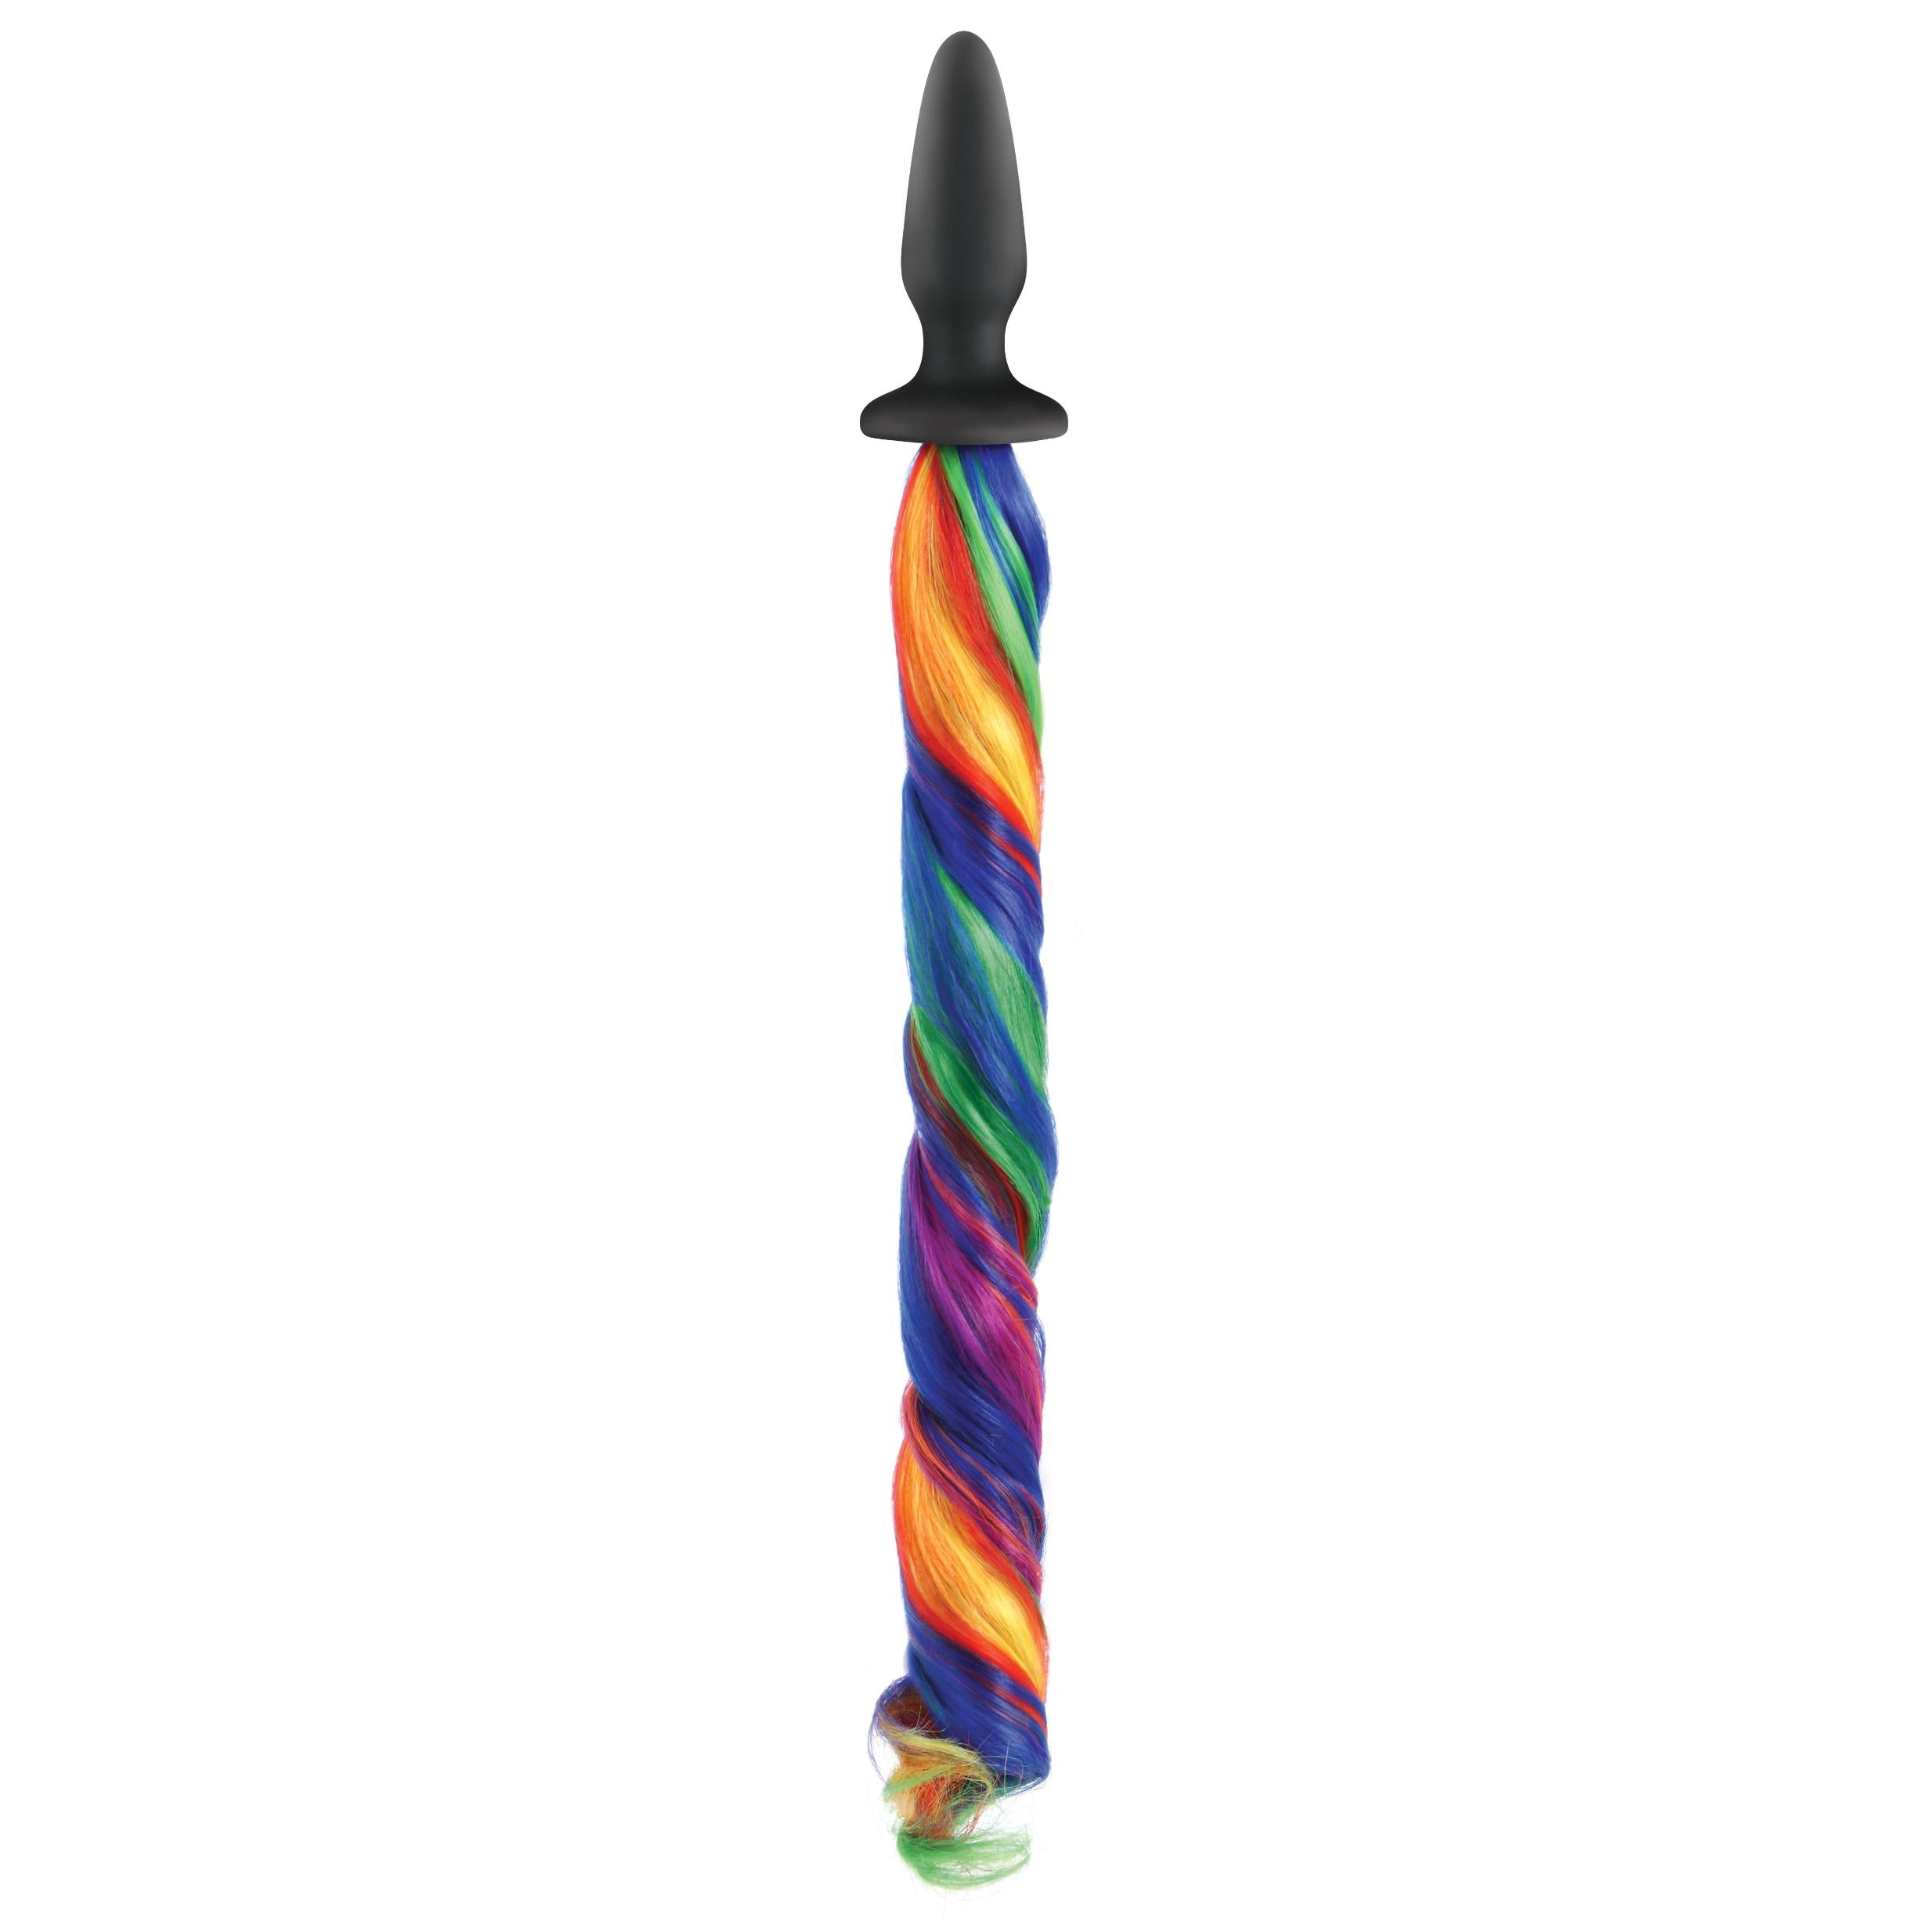 Nsnovelties' Unicorn Tails Anal Plug - Rainbow Rainbow